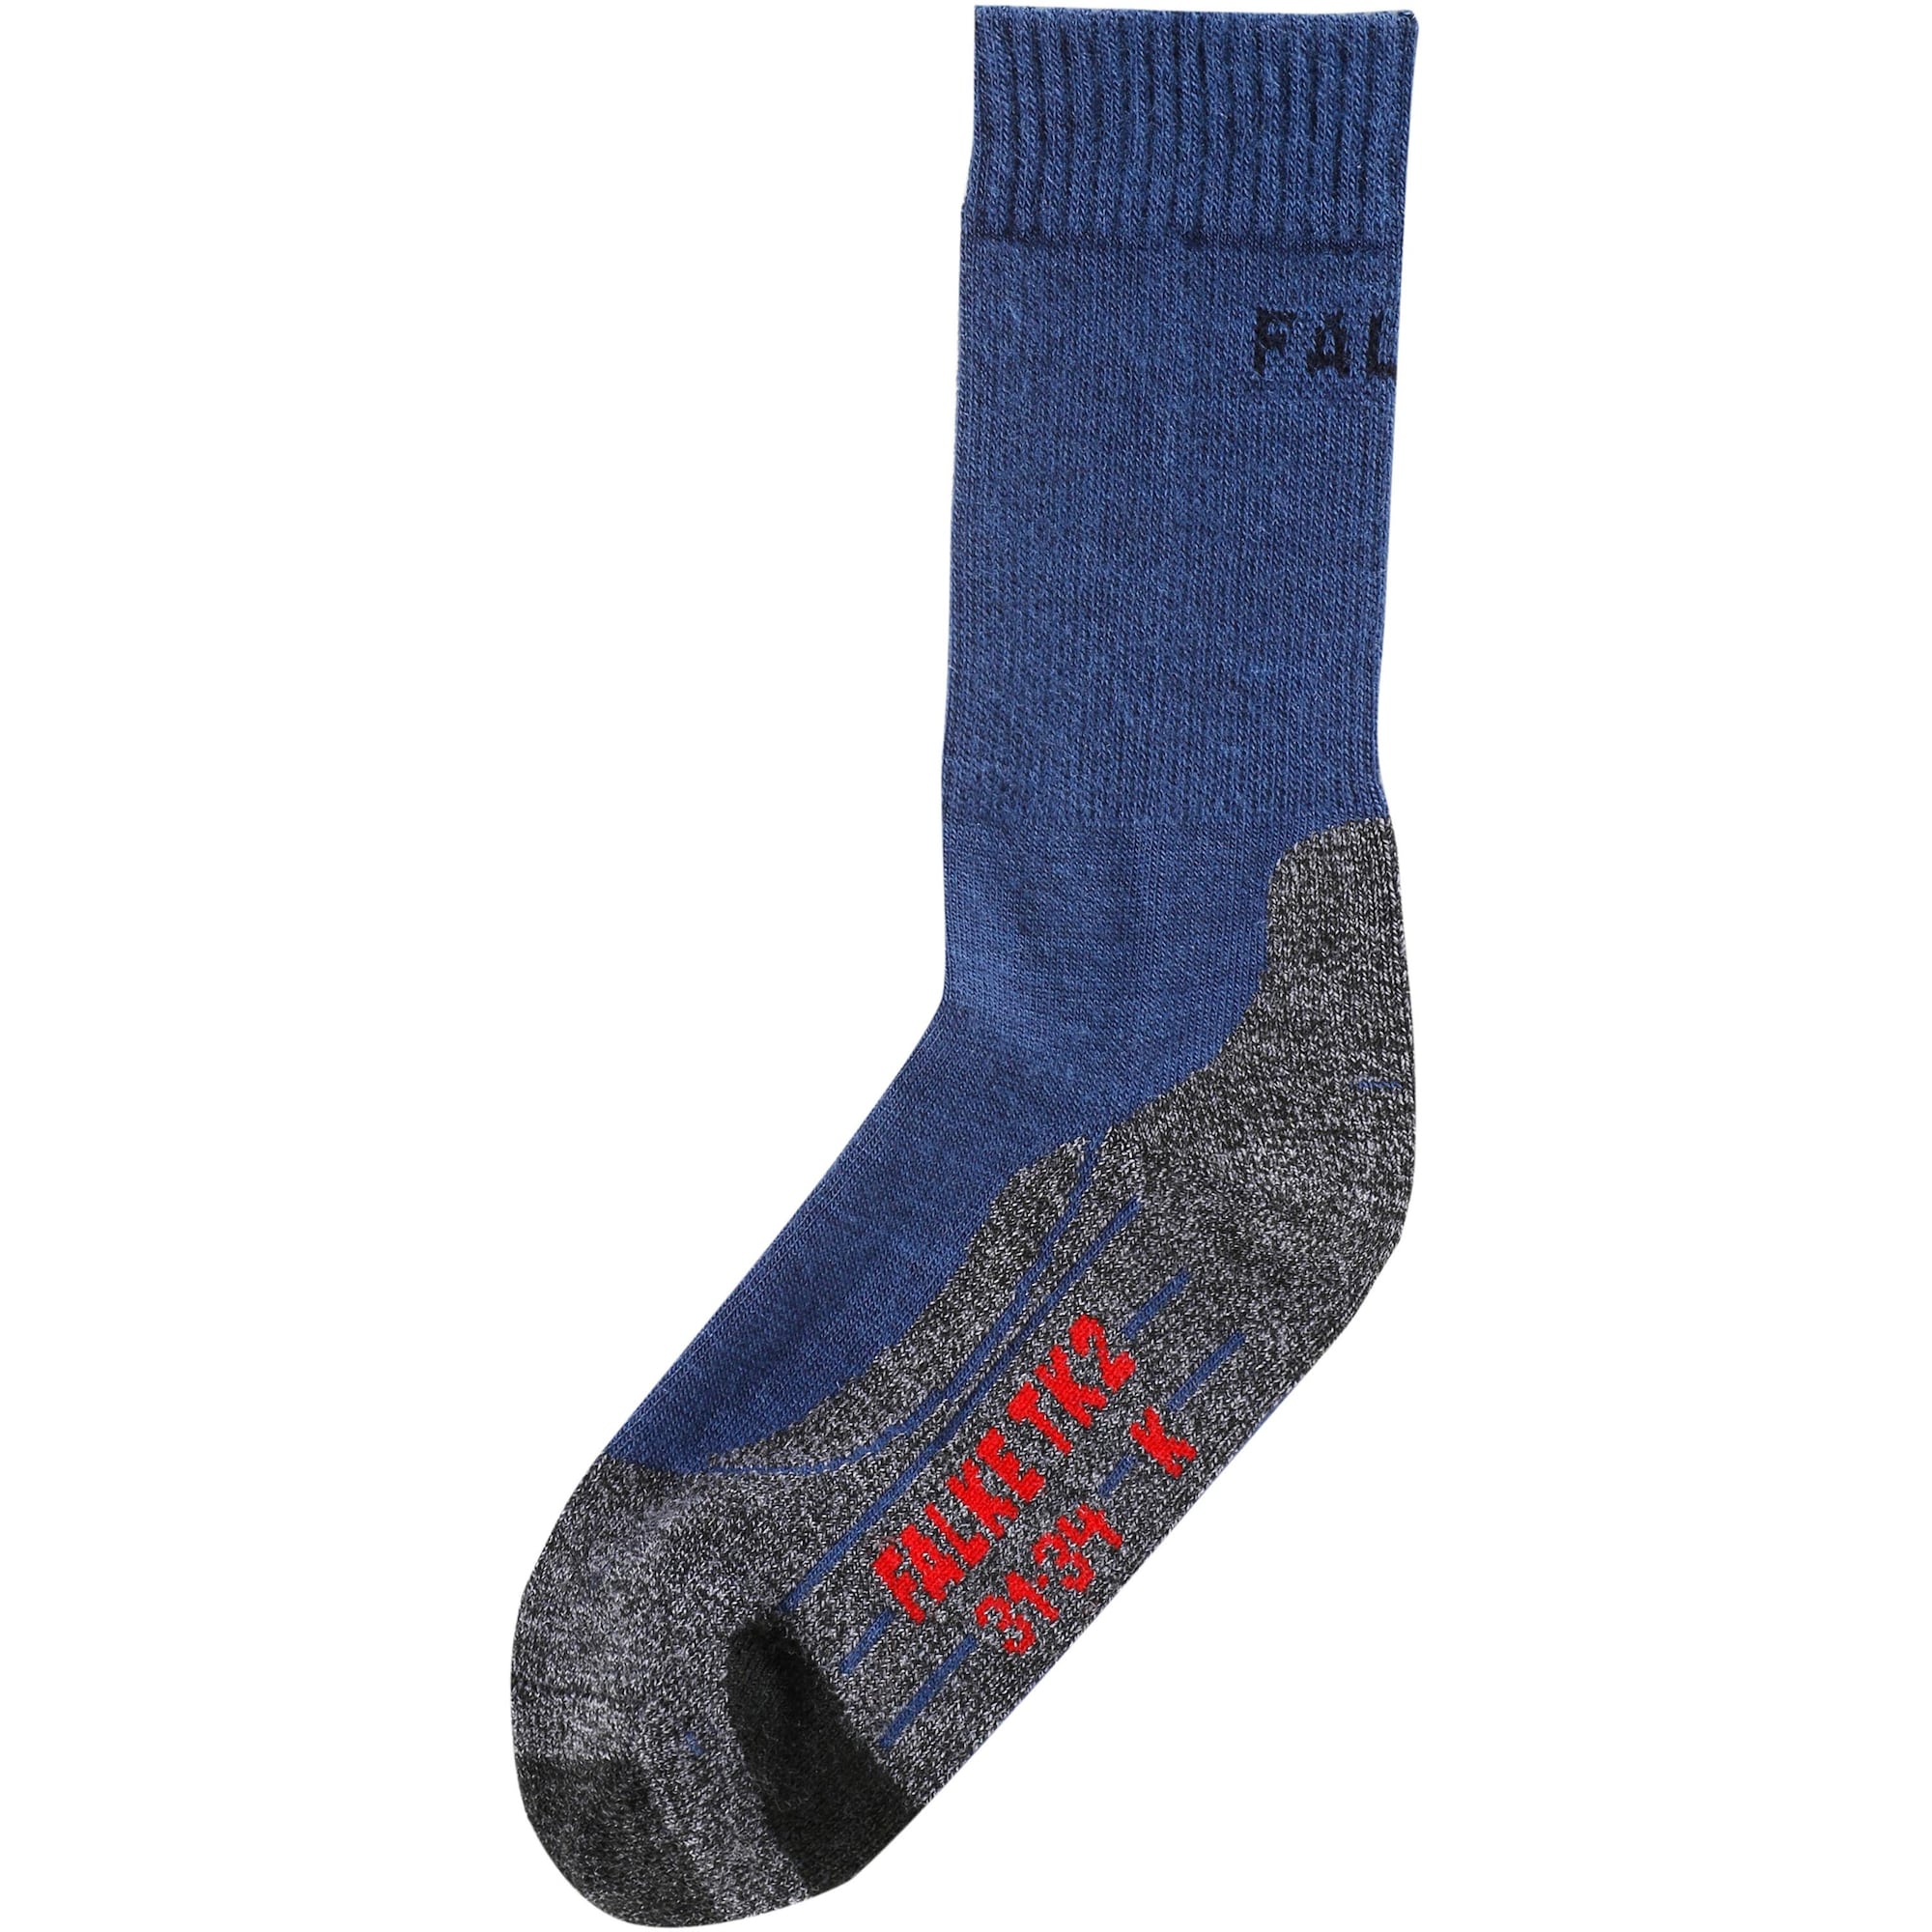 FALKE Sportinės kojinės dangaus žydra / margai pilka